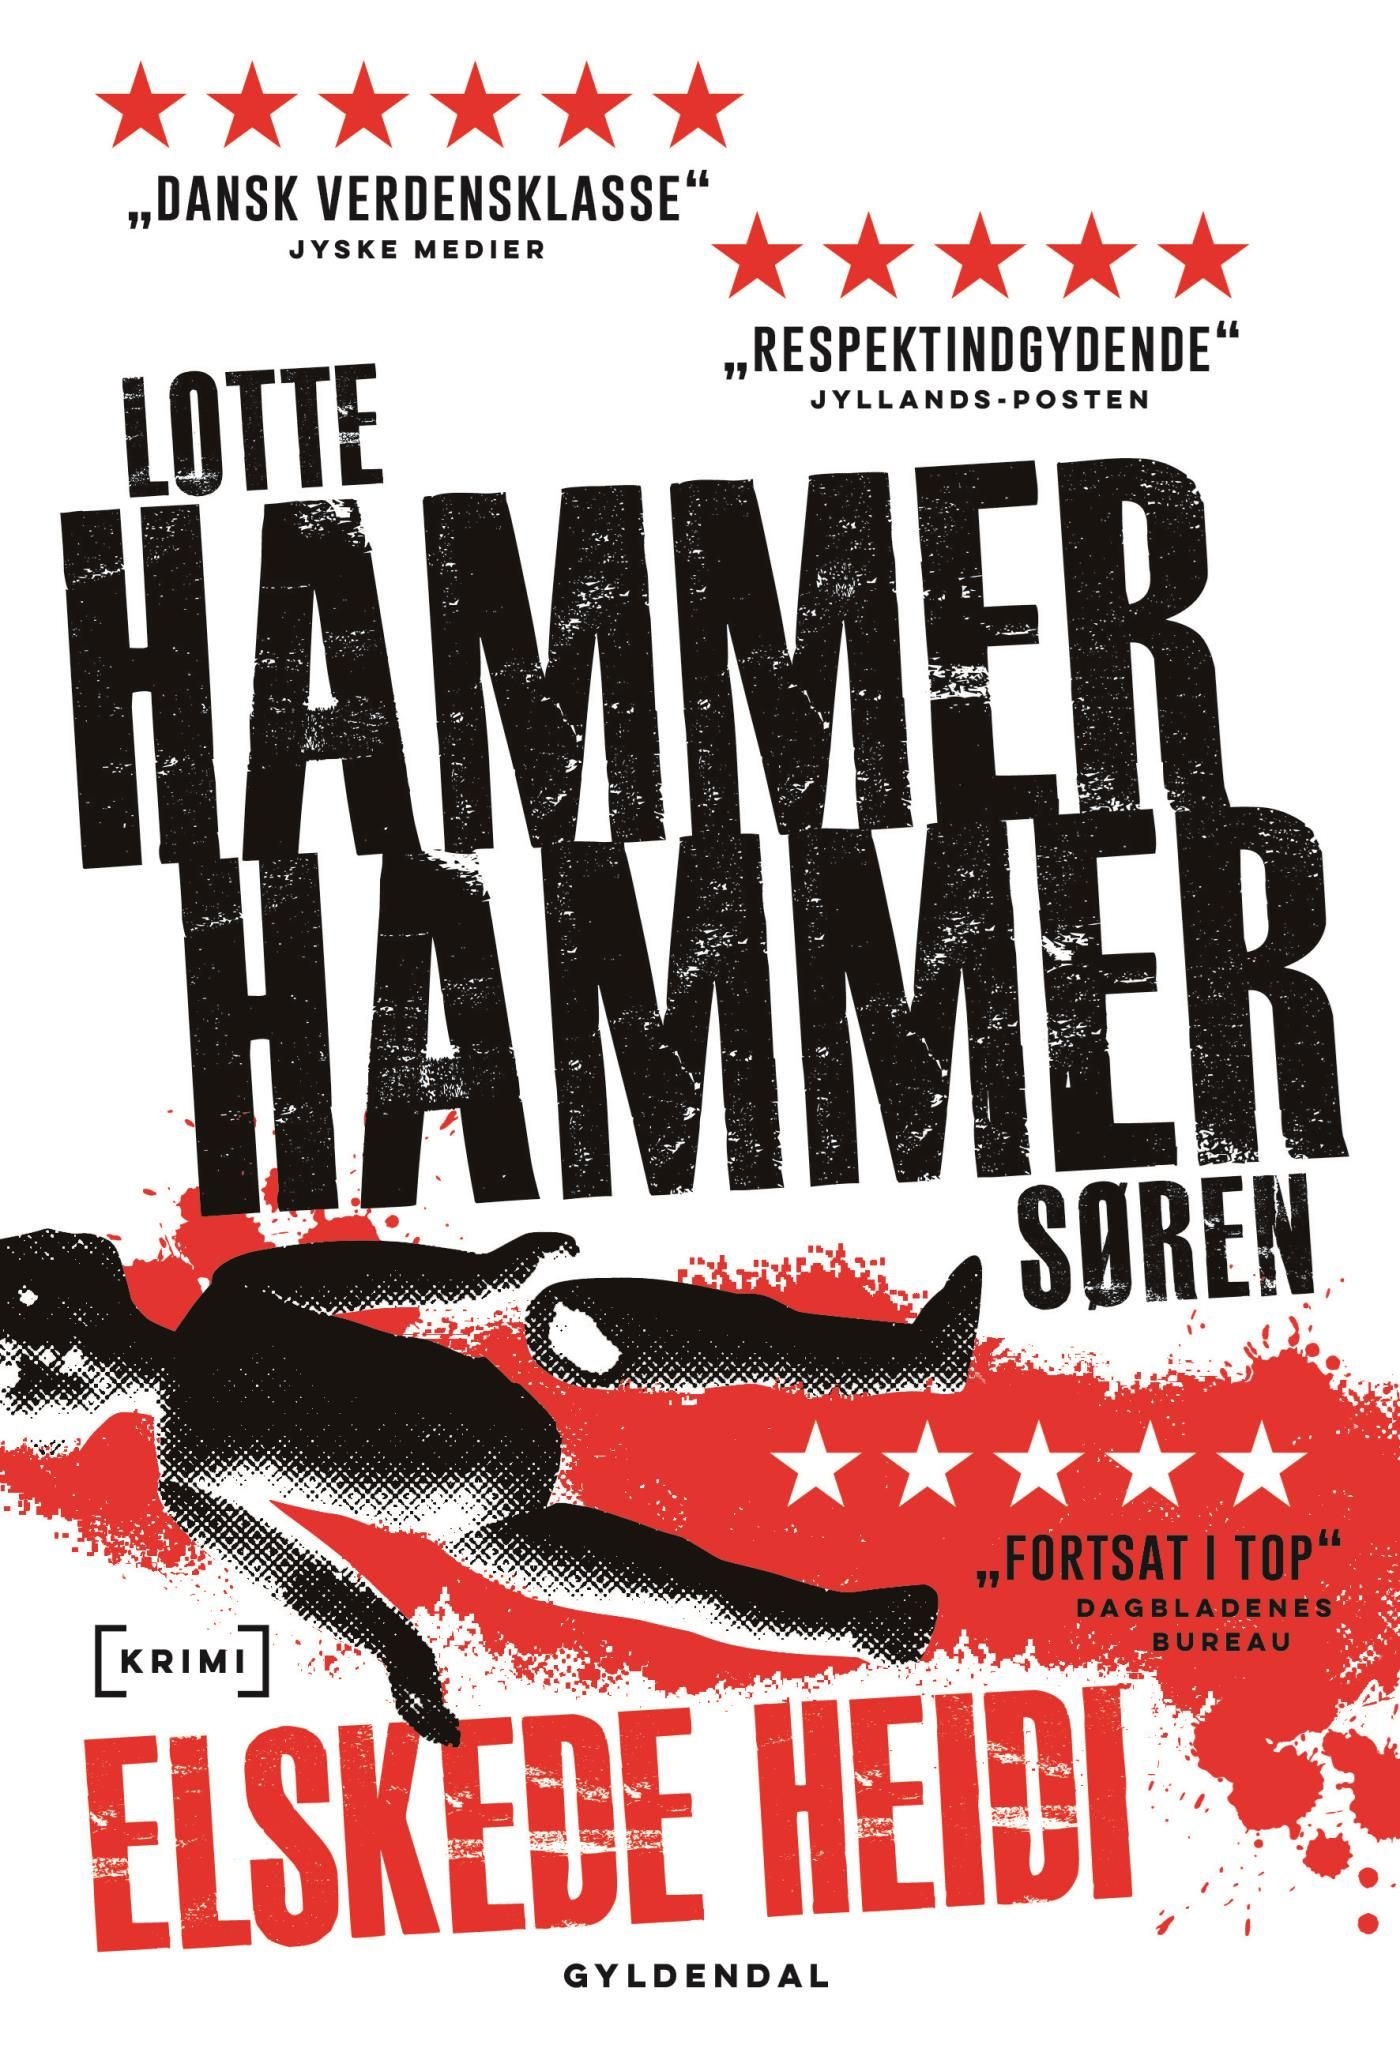 Elskede Heidi, e-bok av Lotte og Søren Hammer